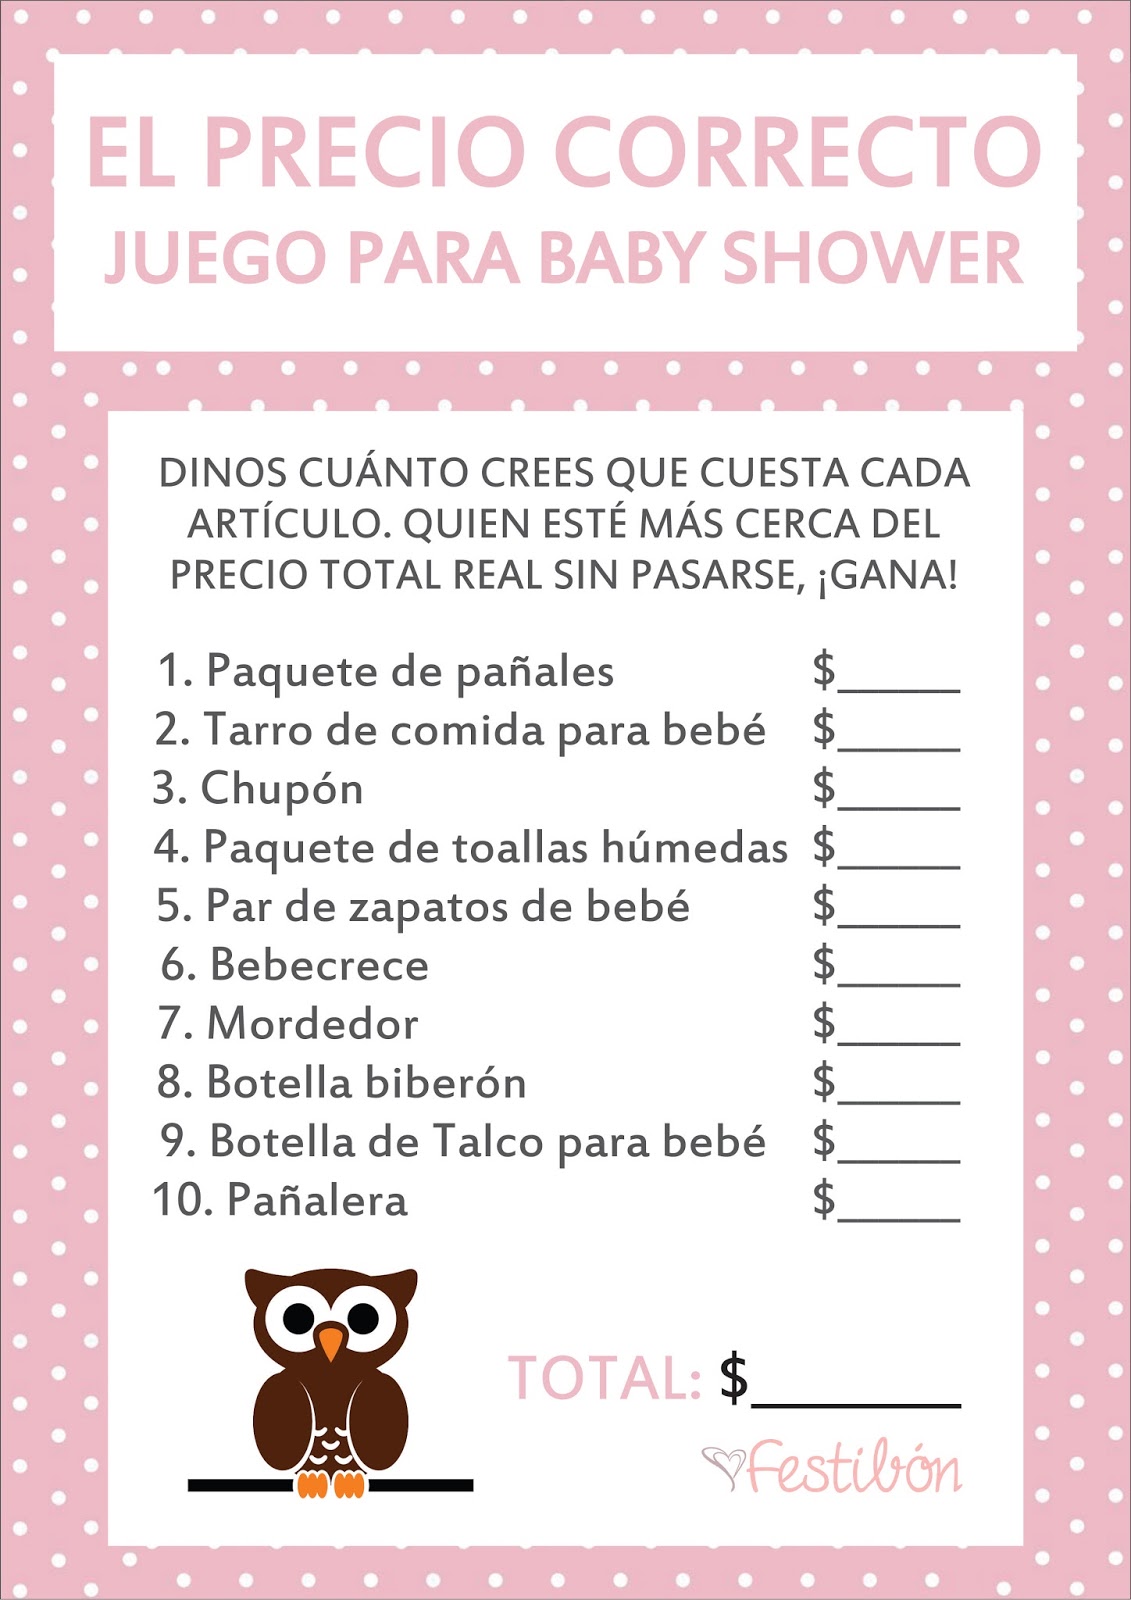 Juegos De Baby Shower Agosto 2015